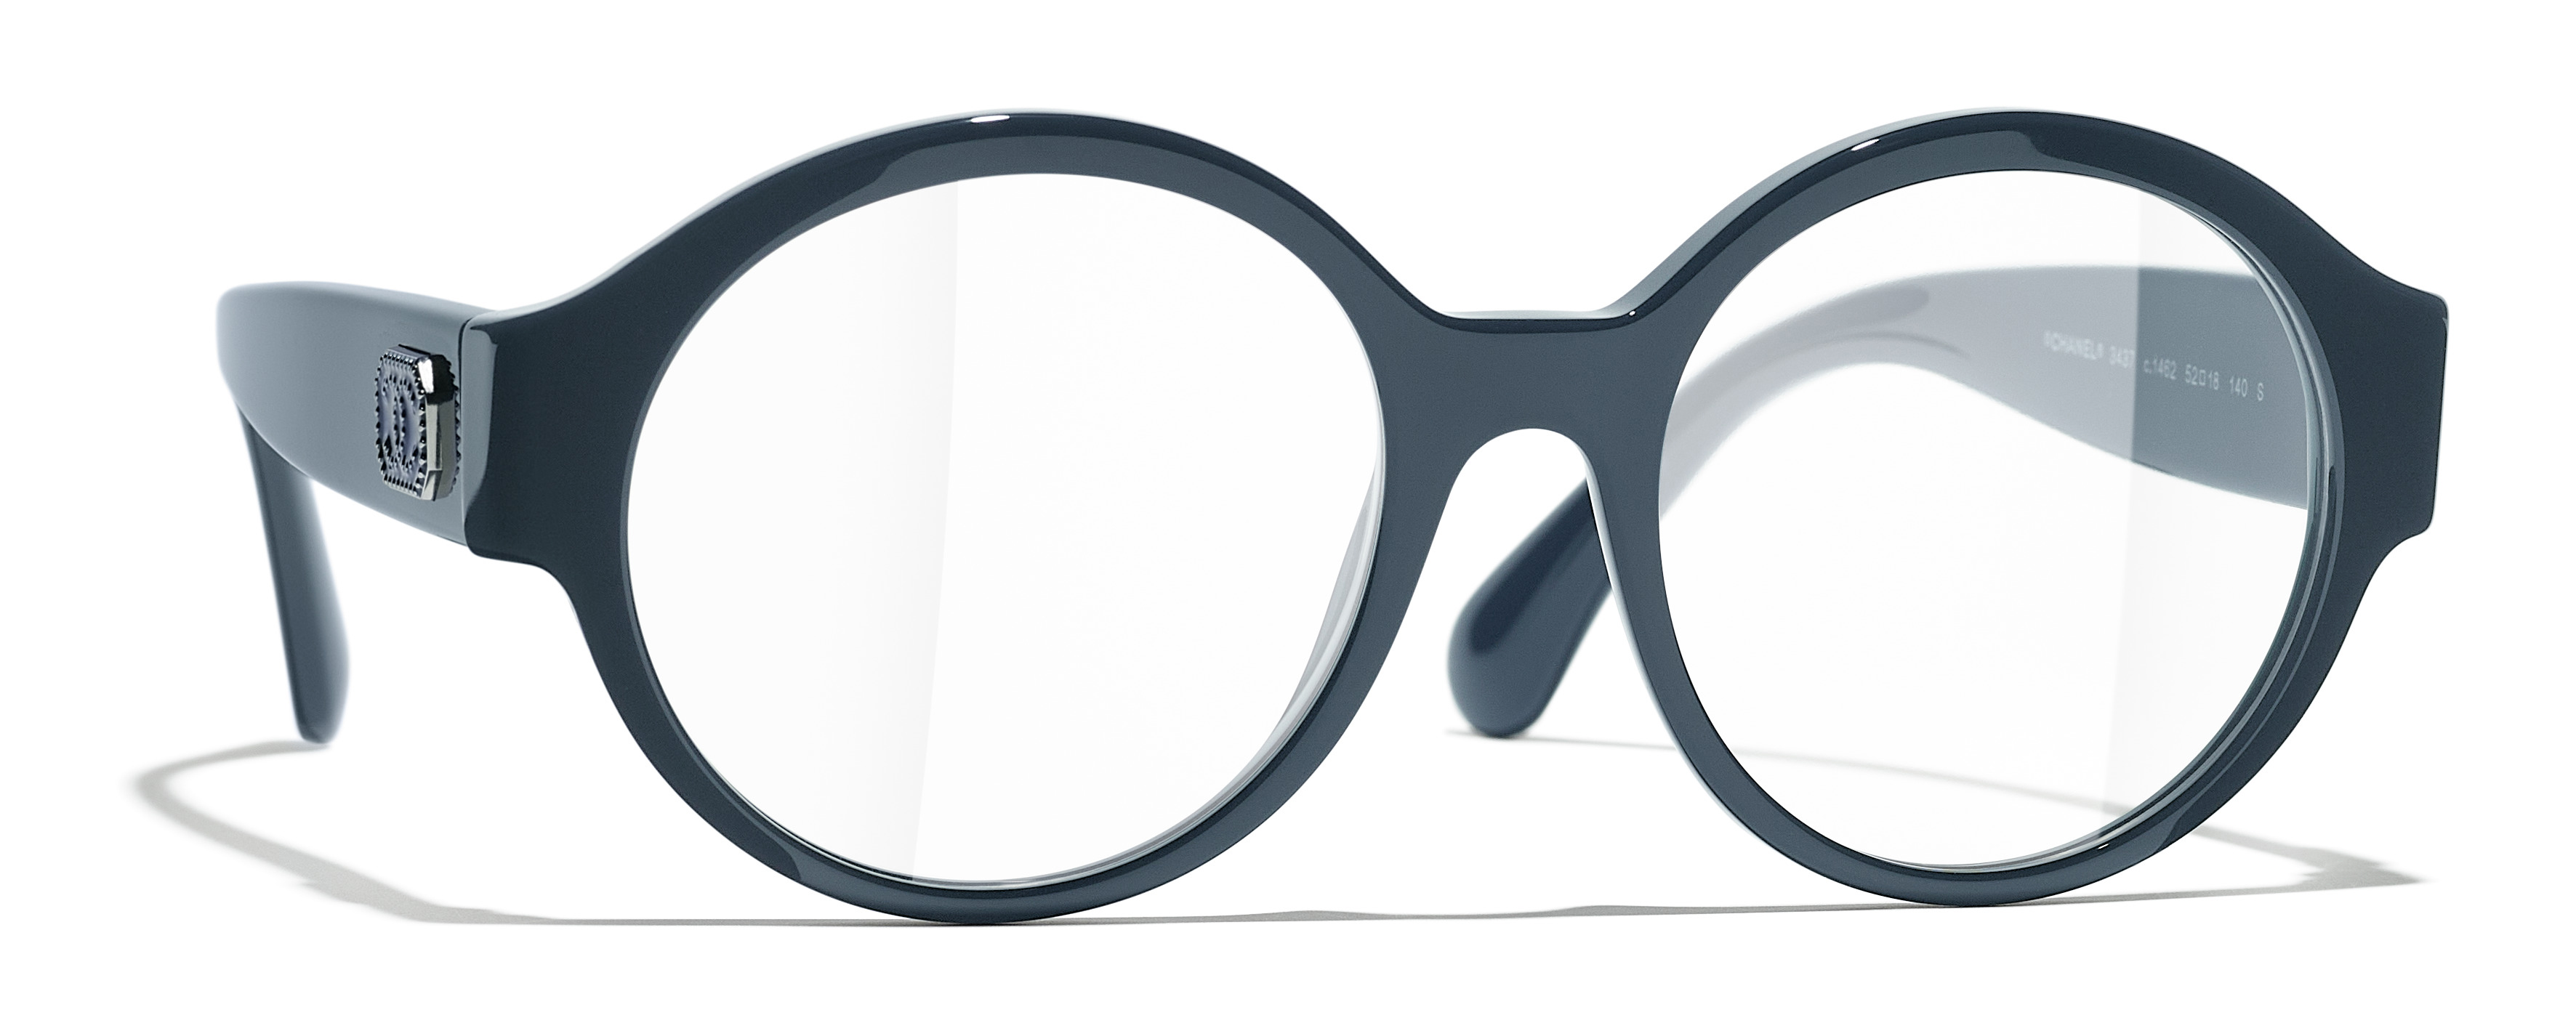 chanel cat eye glasses frames